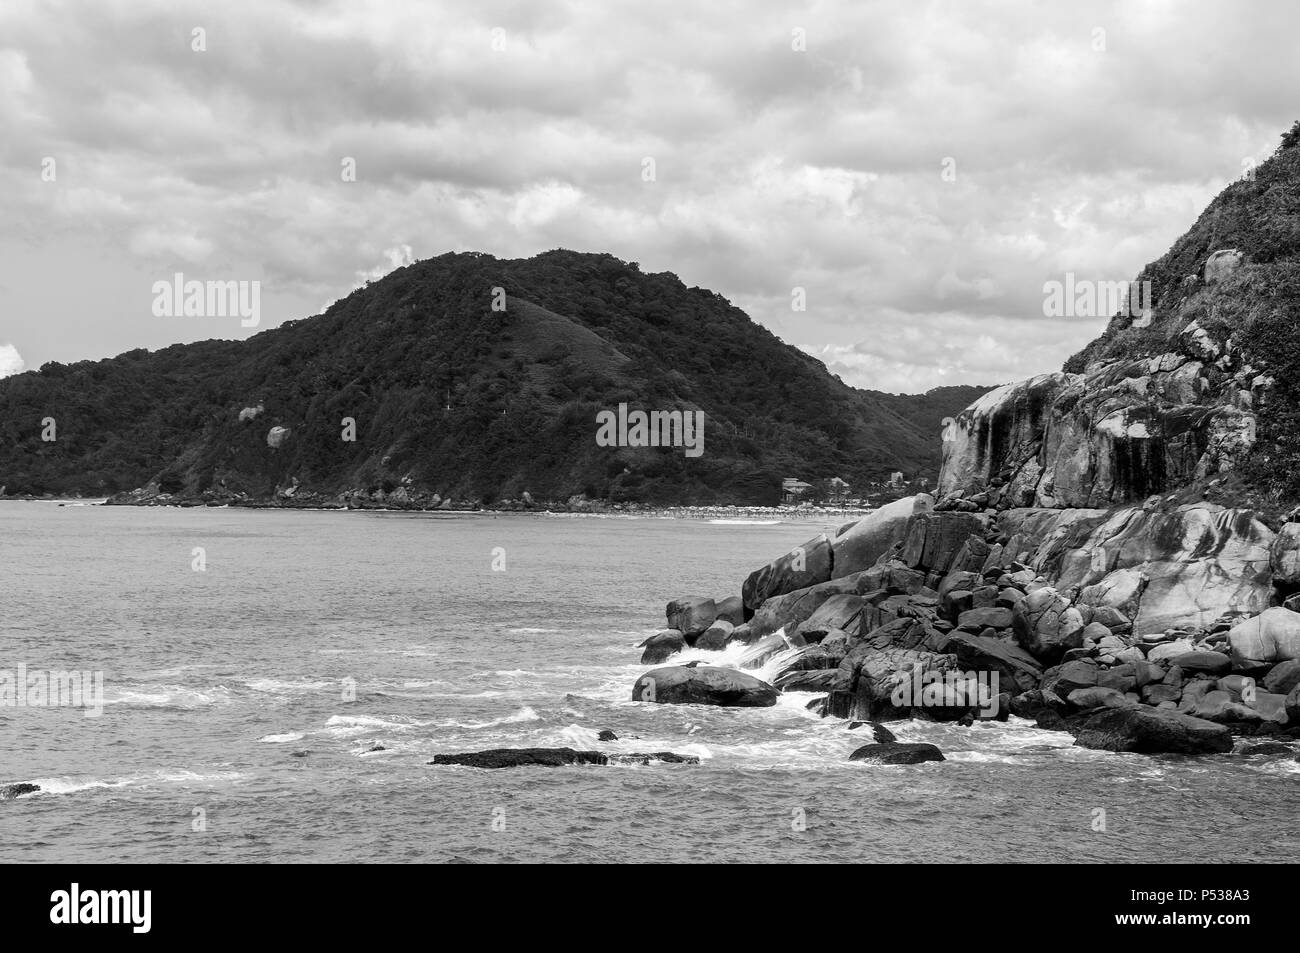 Stadt Guaruja Brasilien Blick in die Natur Meer Landschaft ufer Steine Wellen Stockfoto